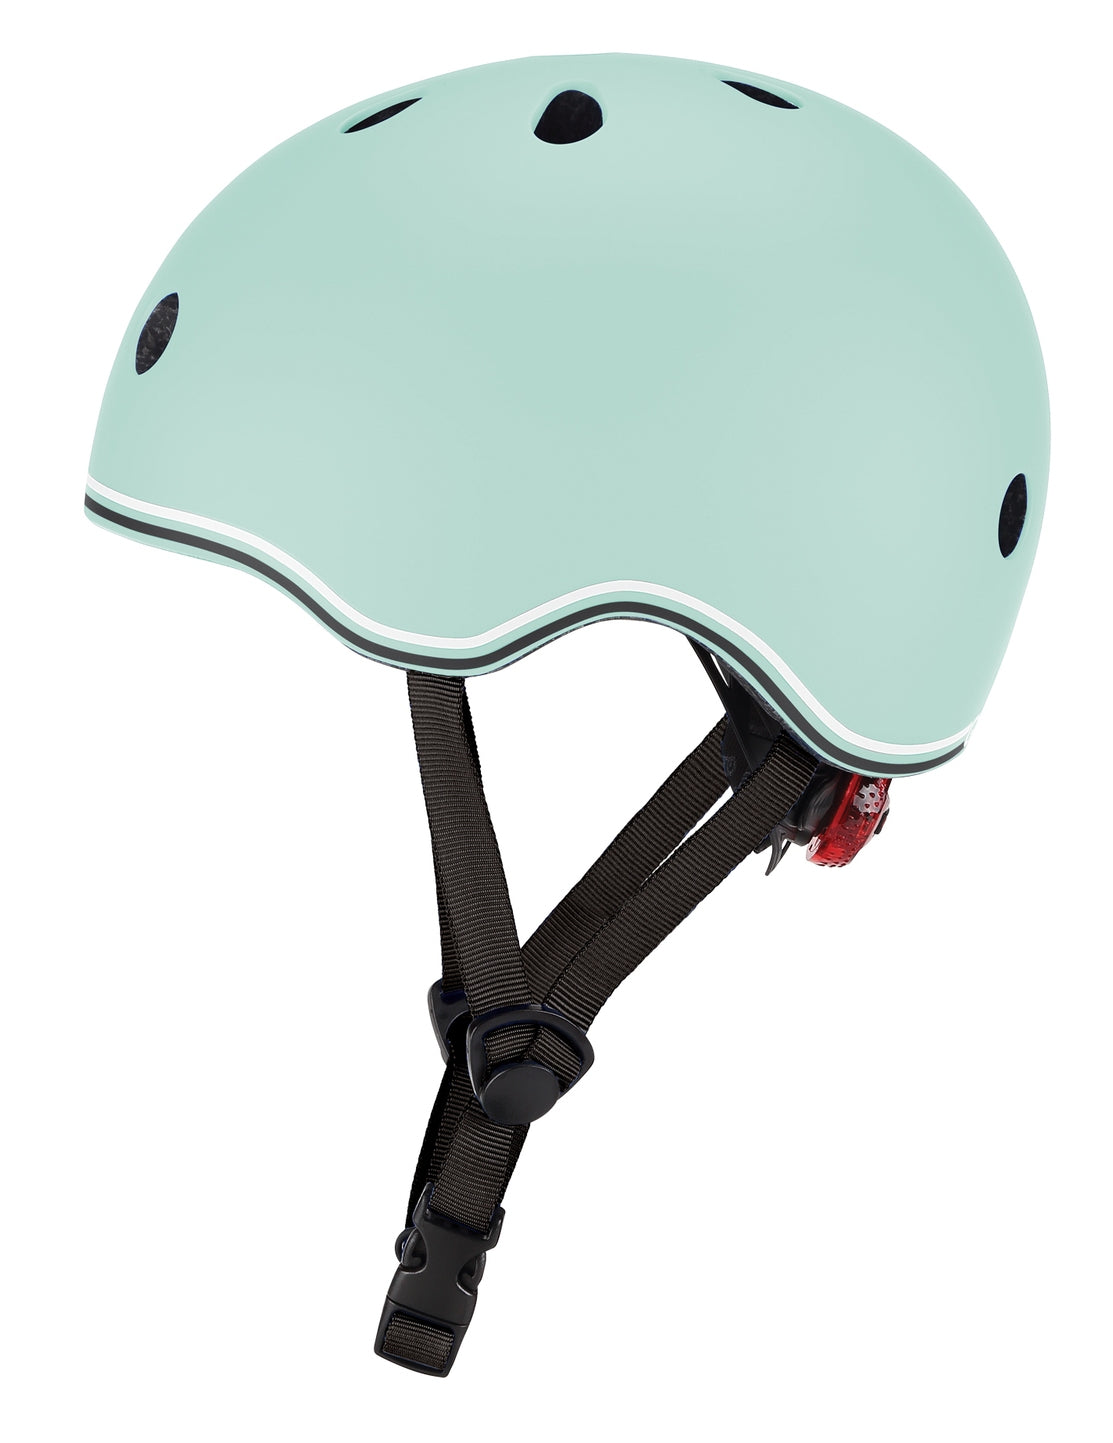 Globber Helmet - Mint - Small (51-55cm)